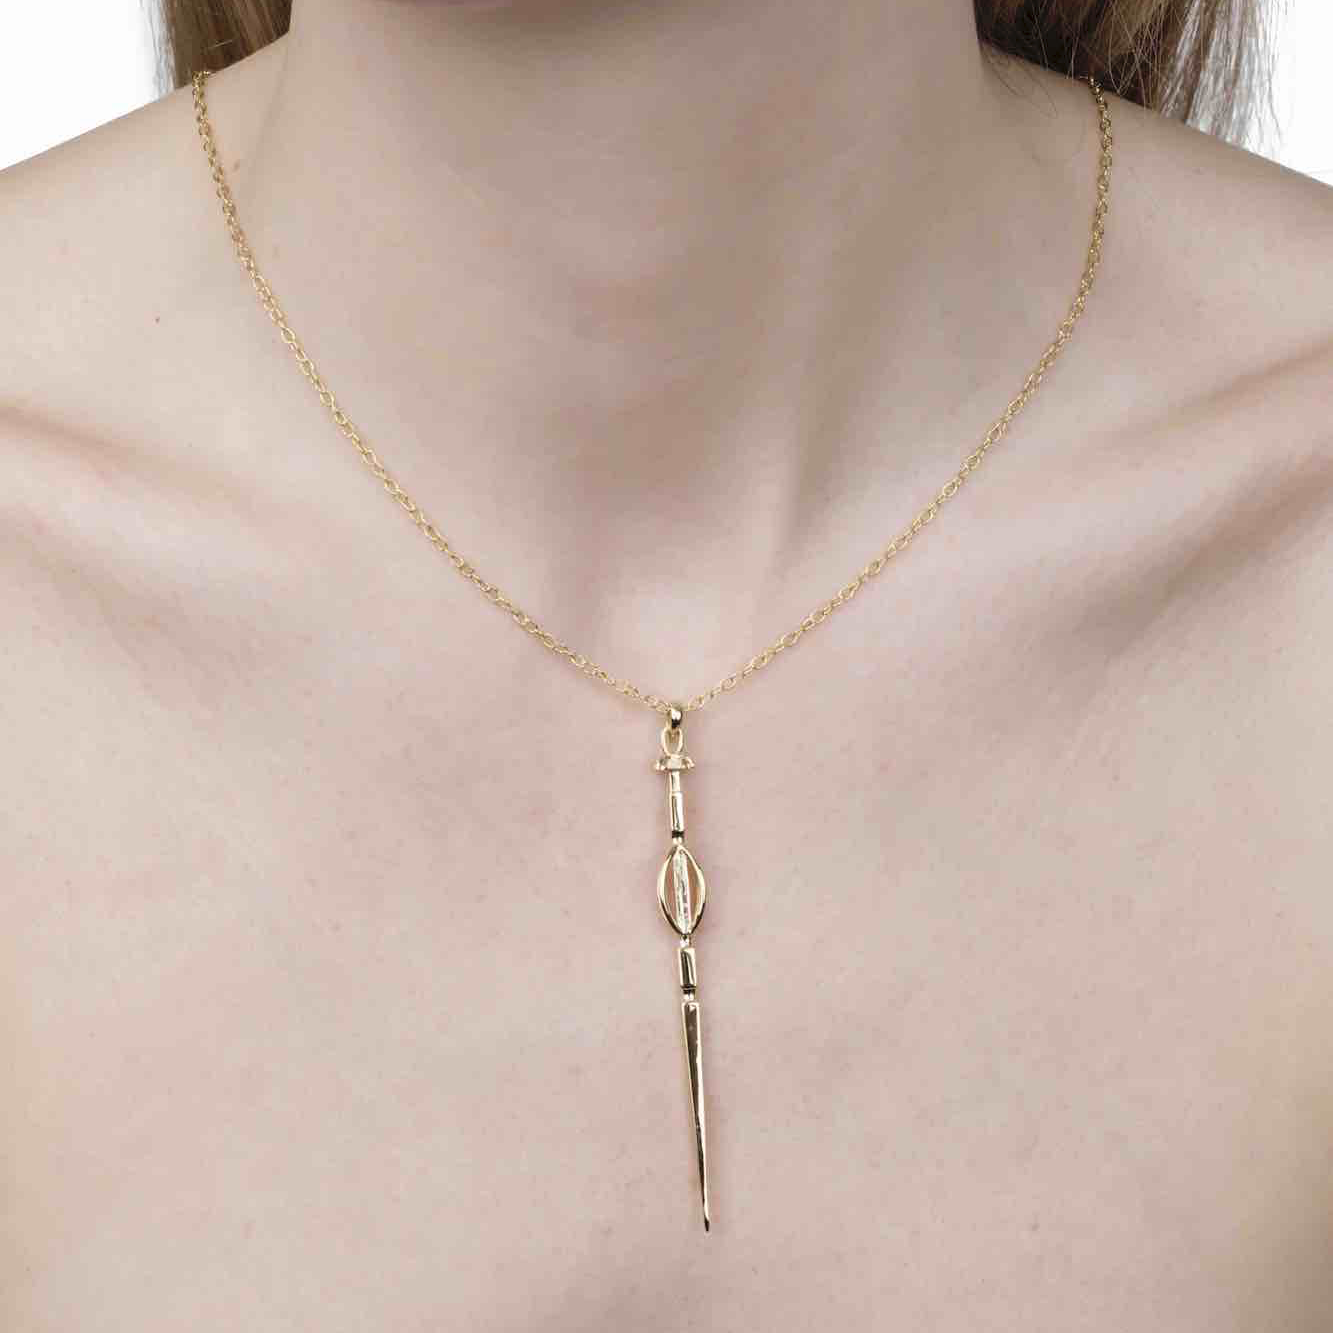 Soldiser Goddess Freya Viking Völva Gold Necklace on model